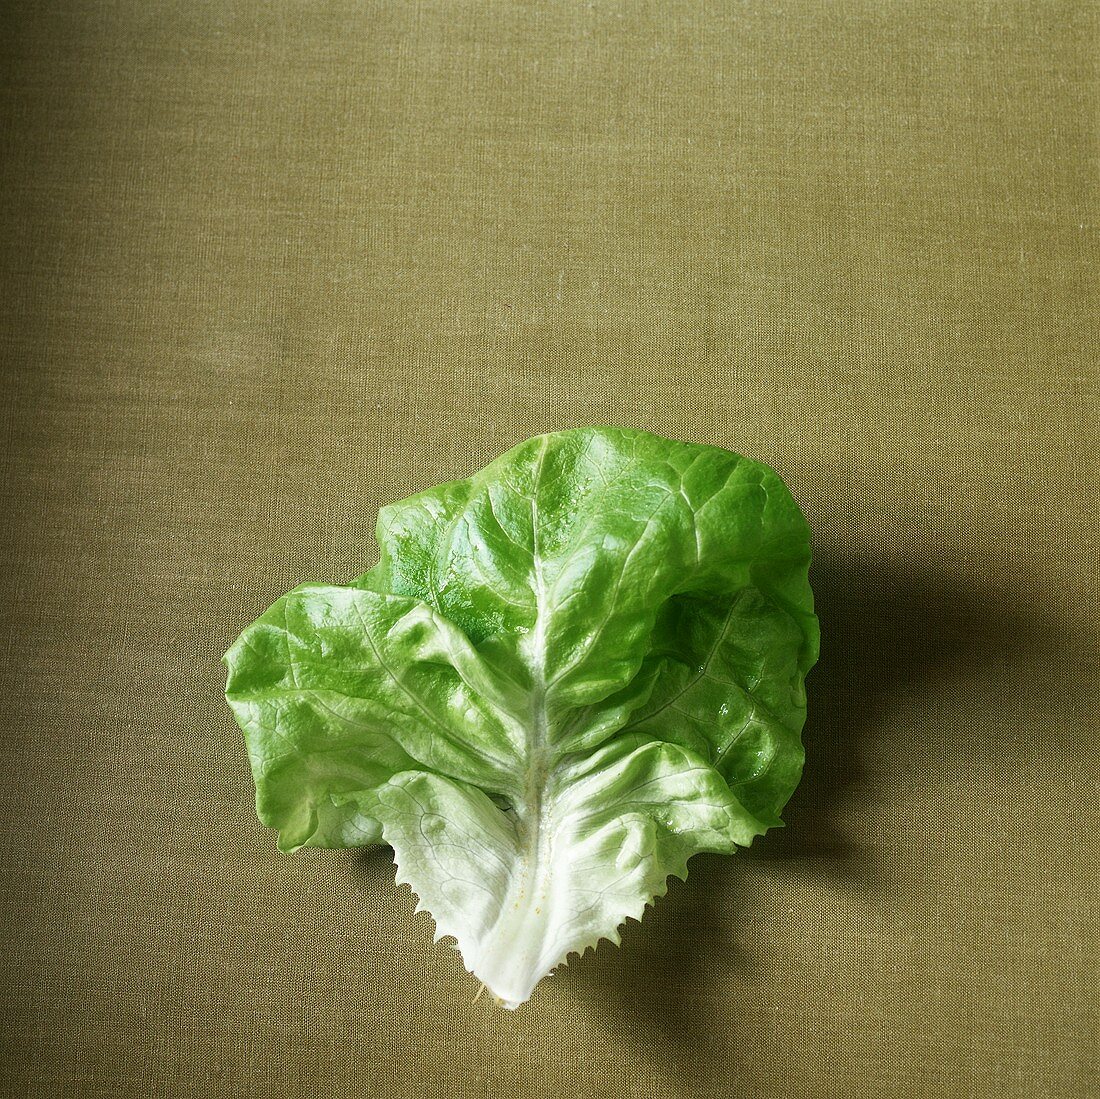 A lettuce leaf